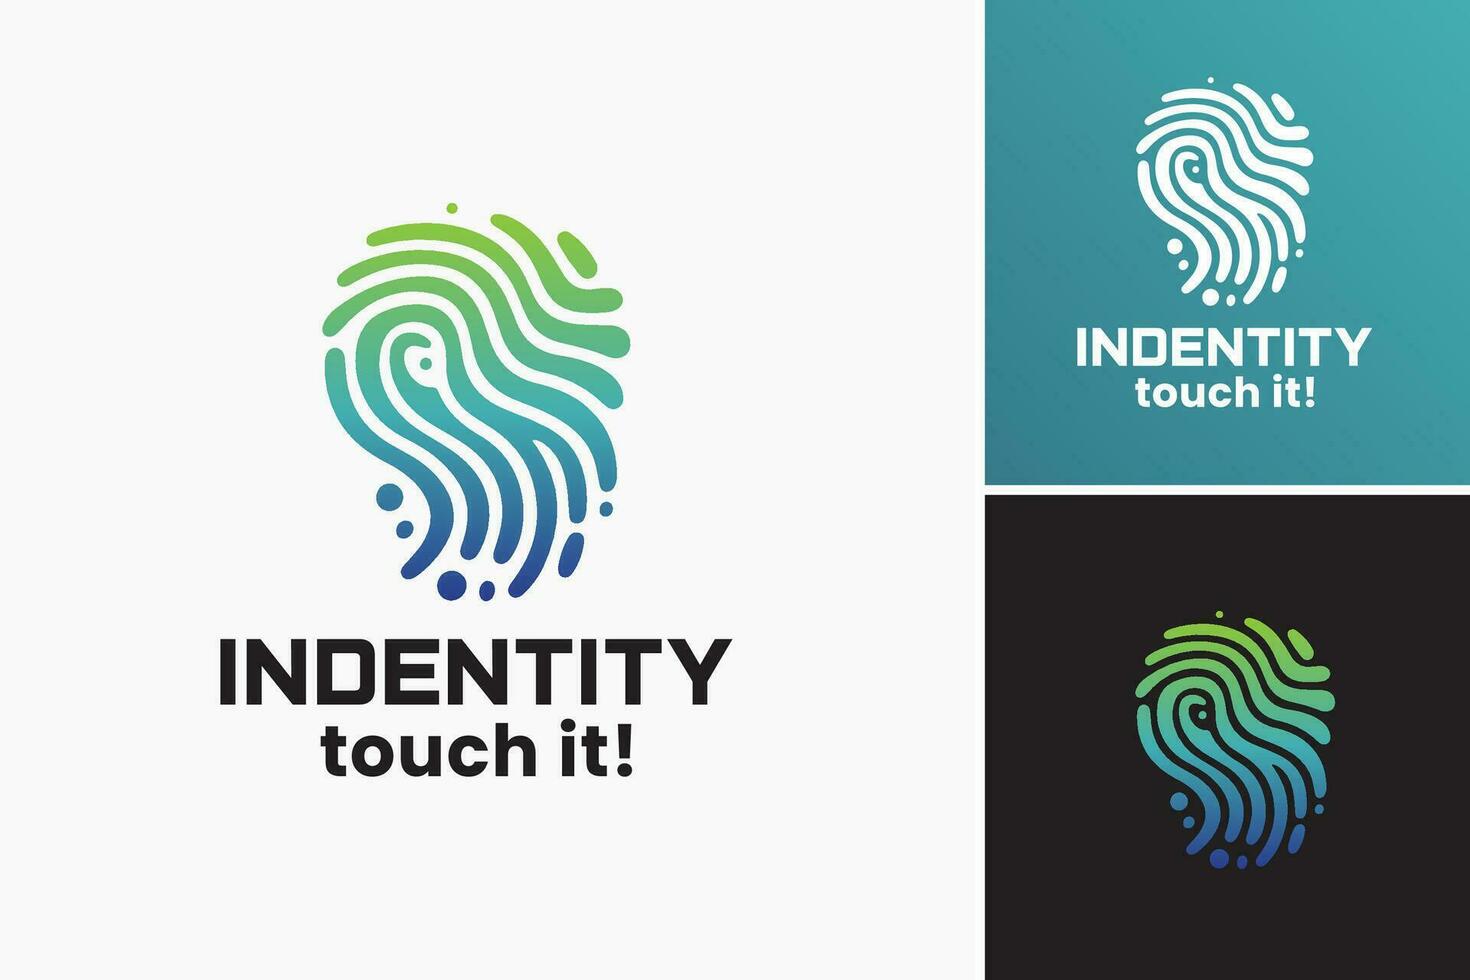 identidad toque logo es un versátil diseño activo ese lata ser usado a crear logos y marca identidades con un distintivo y táctil sentir. vector